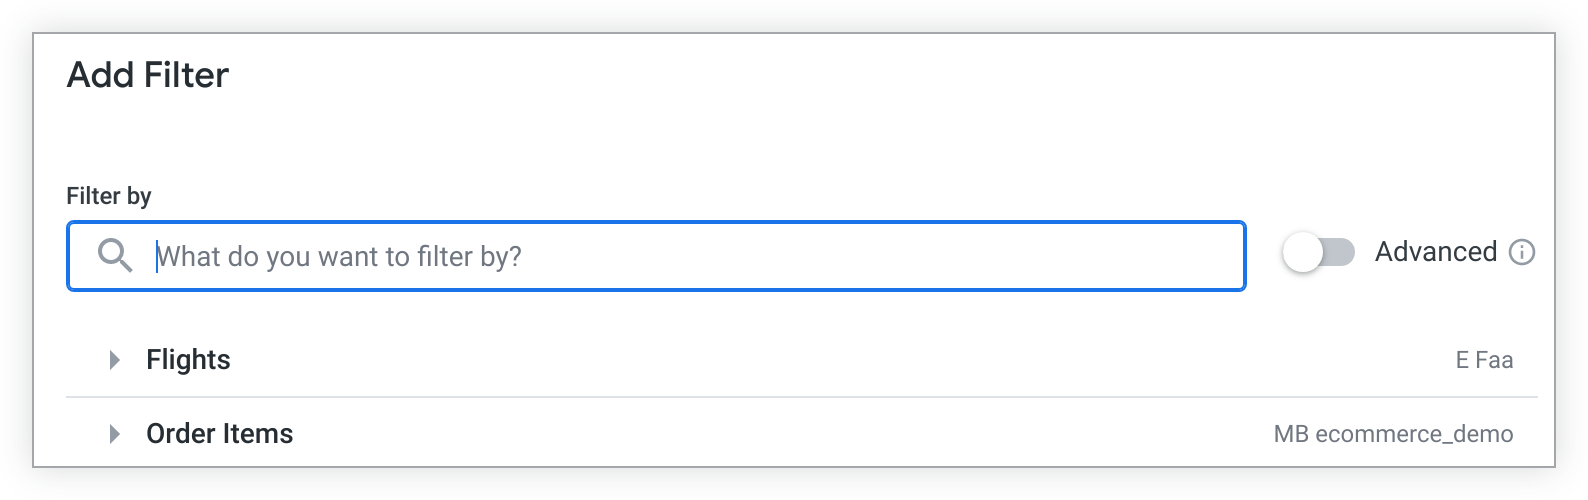 A opção "Explorar" pré-preenchida na janela "Adicionar filtro" aparece abaixo da barra de pesquisa "Filtrar por".